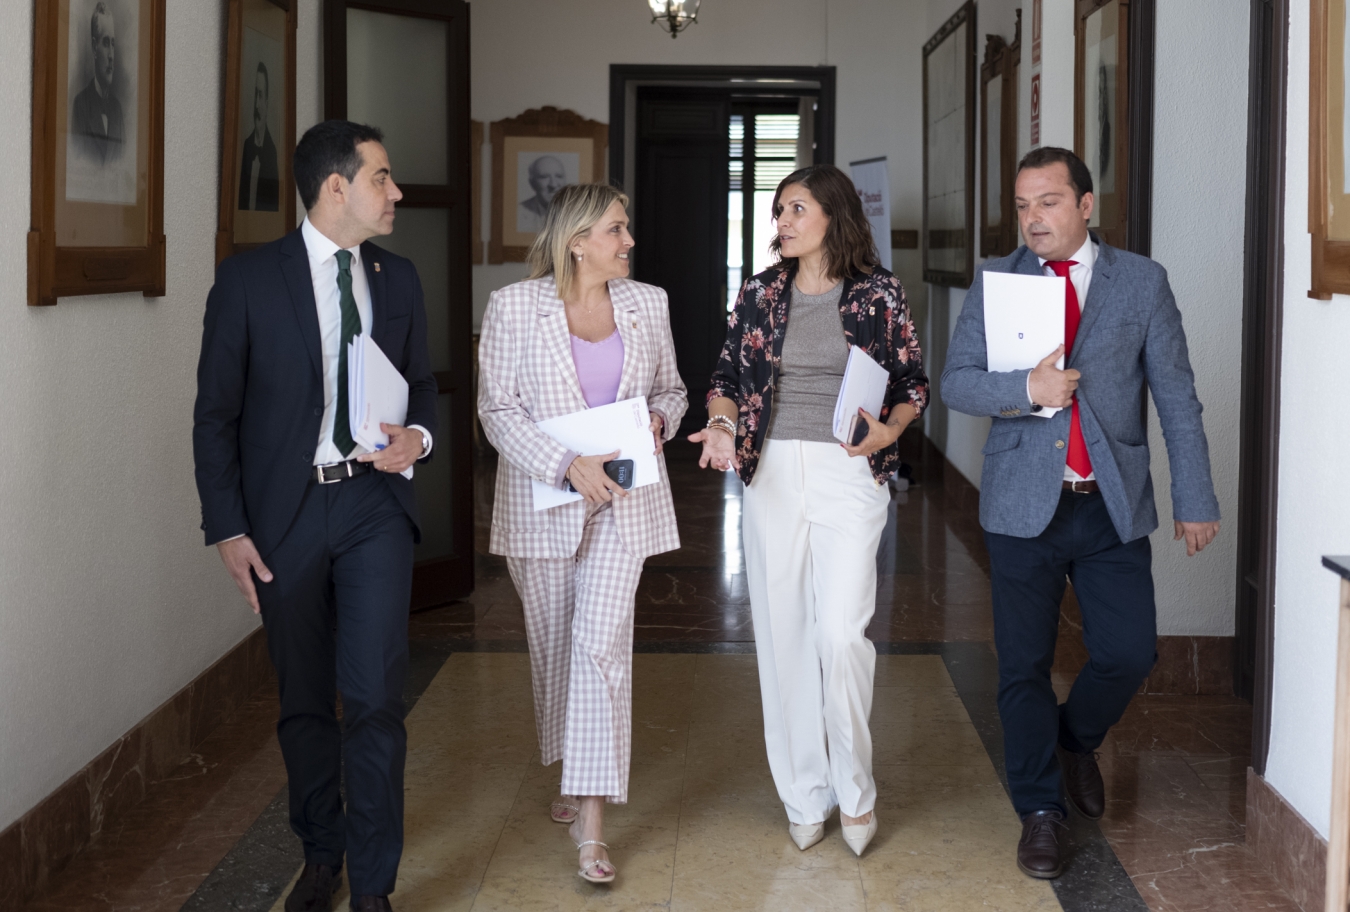 La Diputació de Castelló beneficia als municipis de menys població a través del Fons de Cooperació